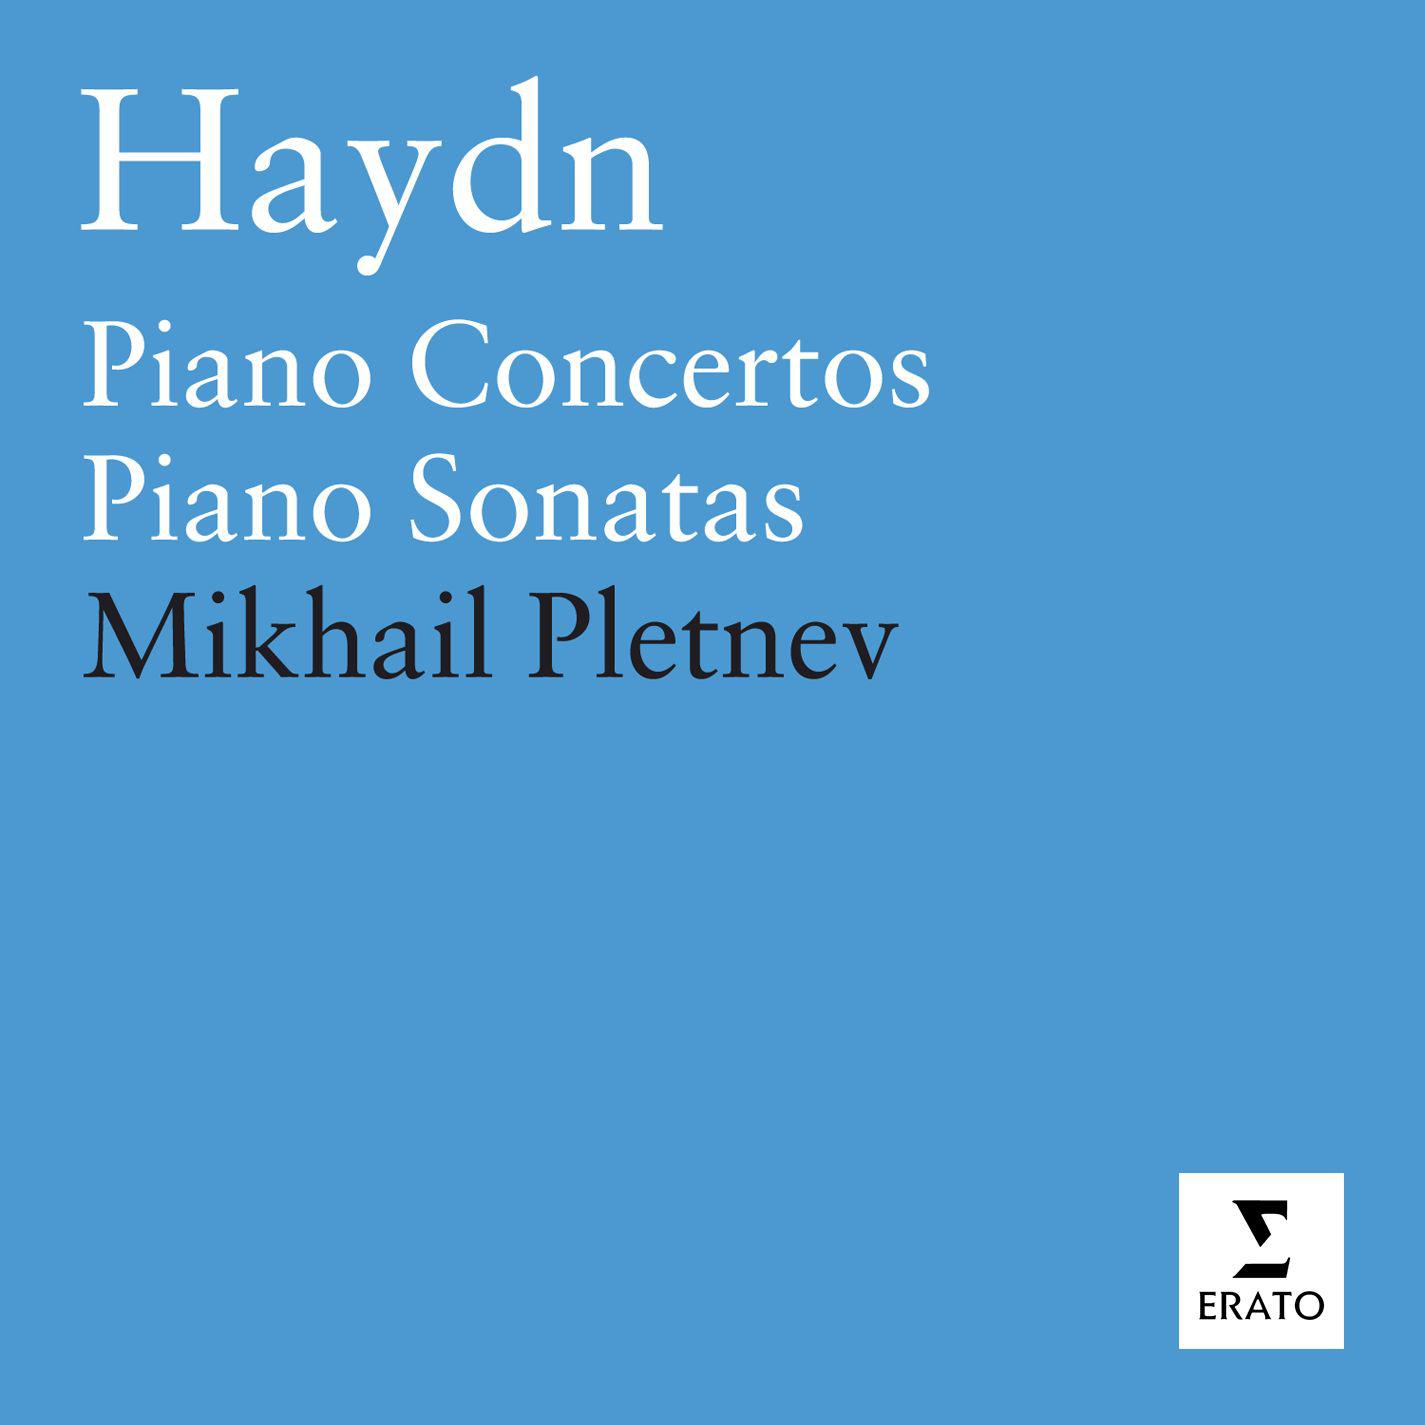 Piano Concerto in F Major, Hob. XVIII: 7 - II Adagio